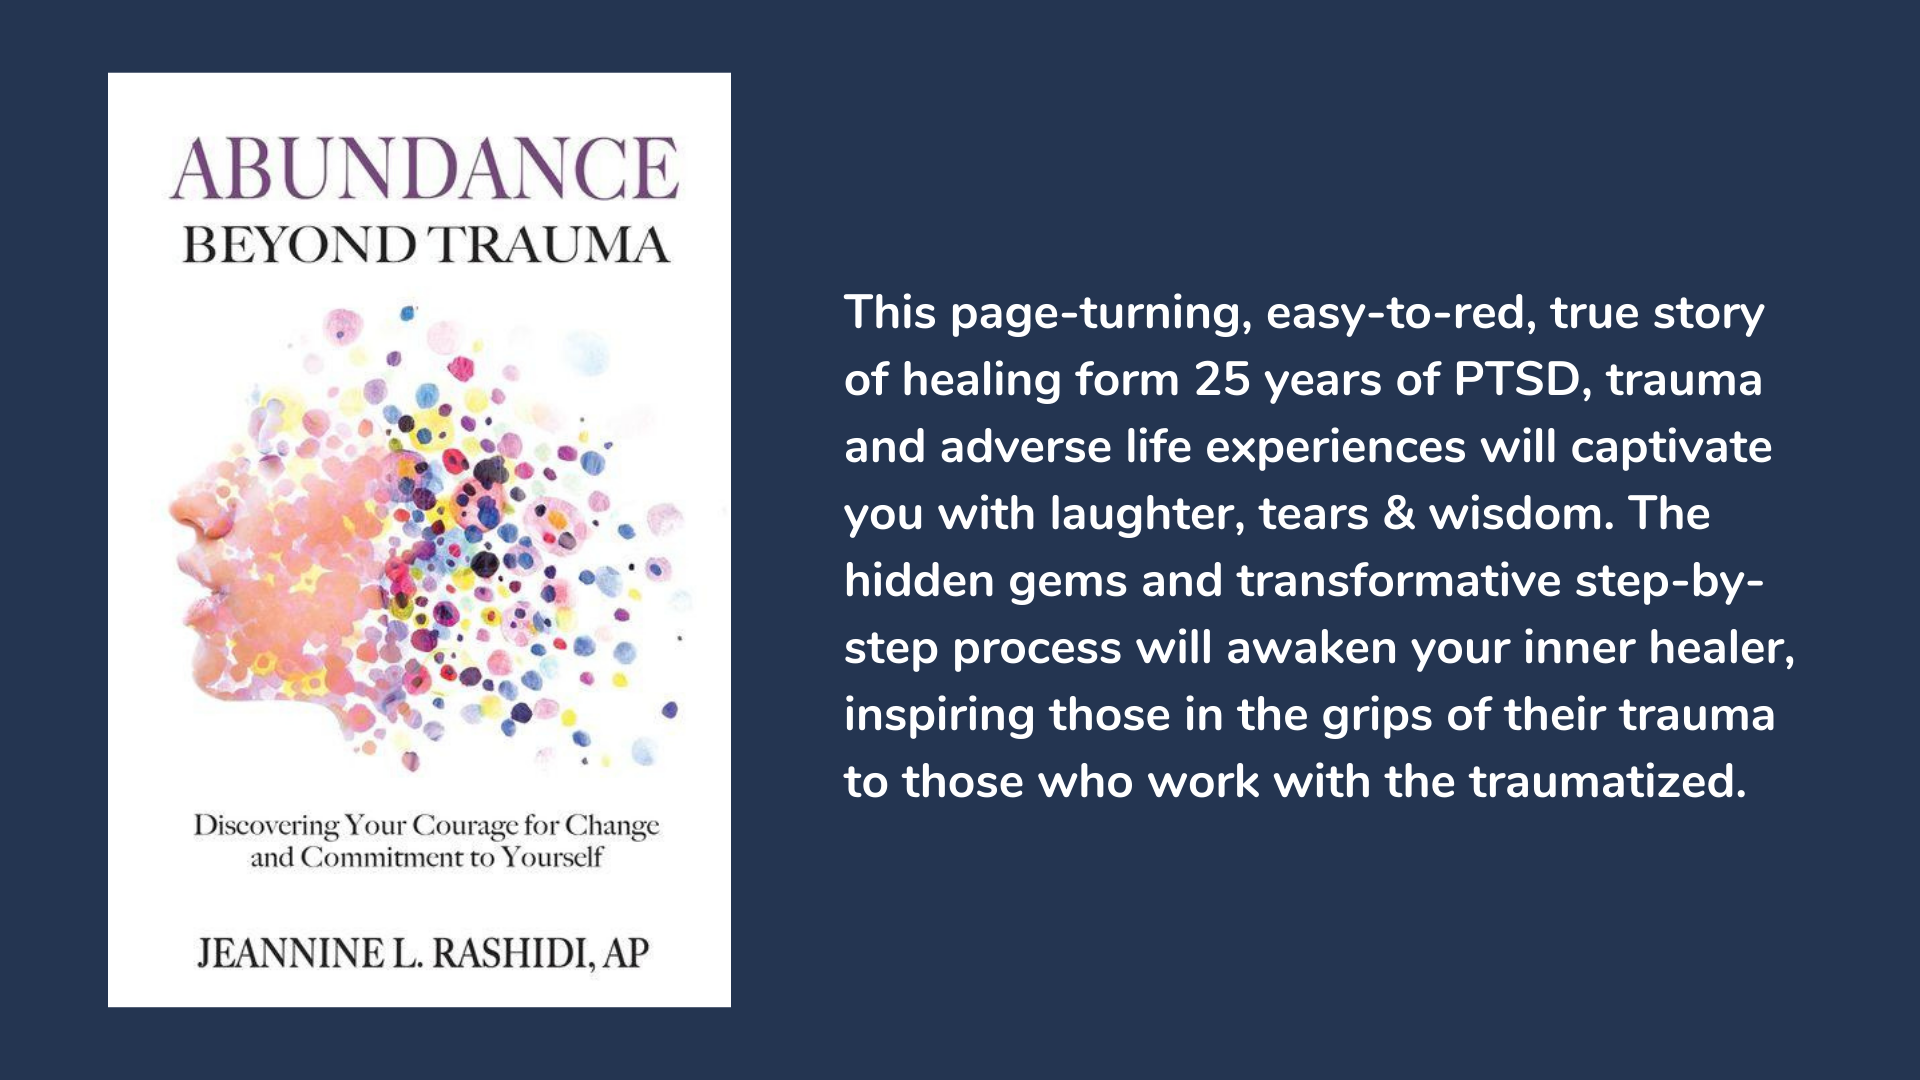 Abundance Beyond Trauma, book cover and description.